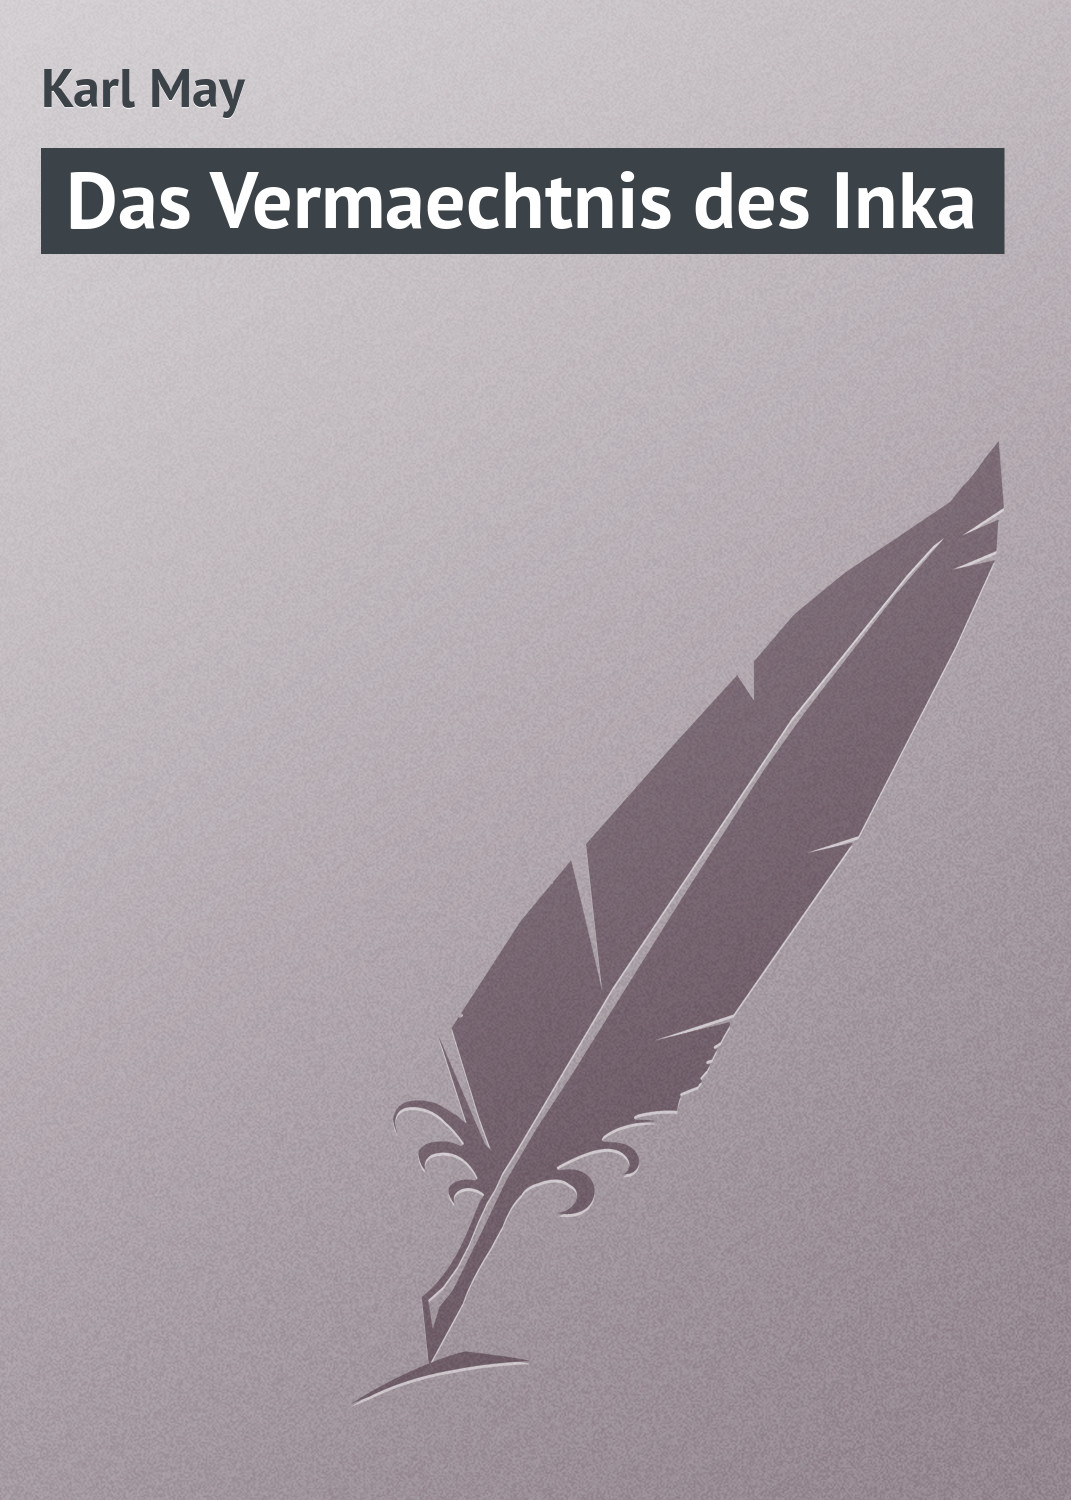 Книга Das Vermaechtnis des Inka из серии , созданная Karl May, может относится к жанру Зарубежная старинная литература, Зарубежная классика. Стоимость электронной книги Das Vermaechtnis des Inka с идентификатором 21106886 составляет 5.99 руб.